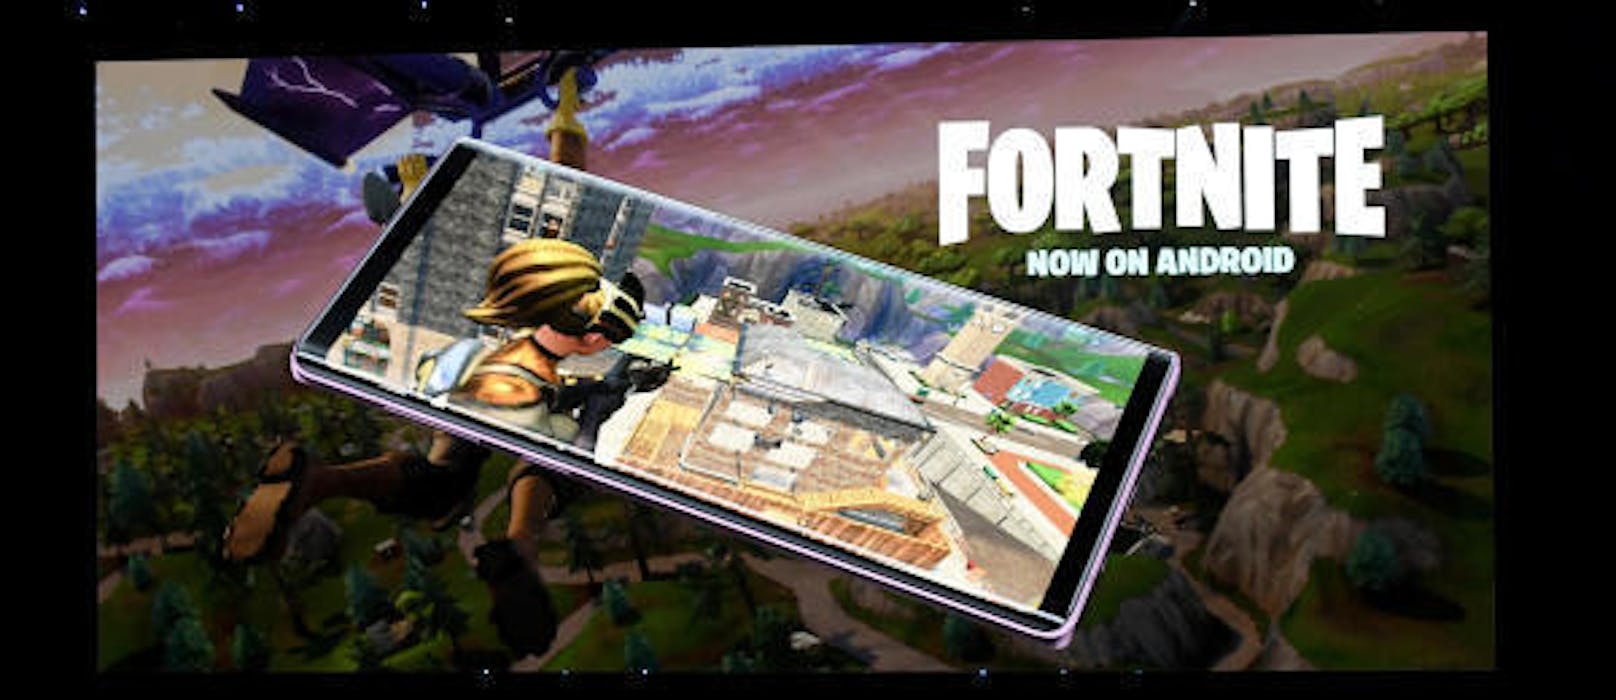 <b>2018:</b> Nach dem Release Ende 2017 startete "Fortnite" durch. Am 9. August 2018 hat der CEO Tim Sweeney angekündigt, dass das Spiel nach langer Wartezeit auf Android-Handys kommt. Es ist ein Schritt zurück zu den Wurzeln von Epic Games.